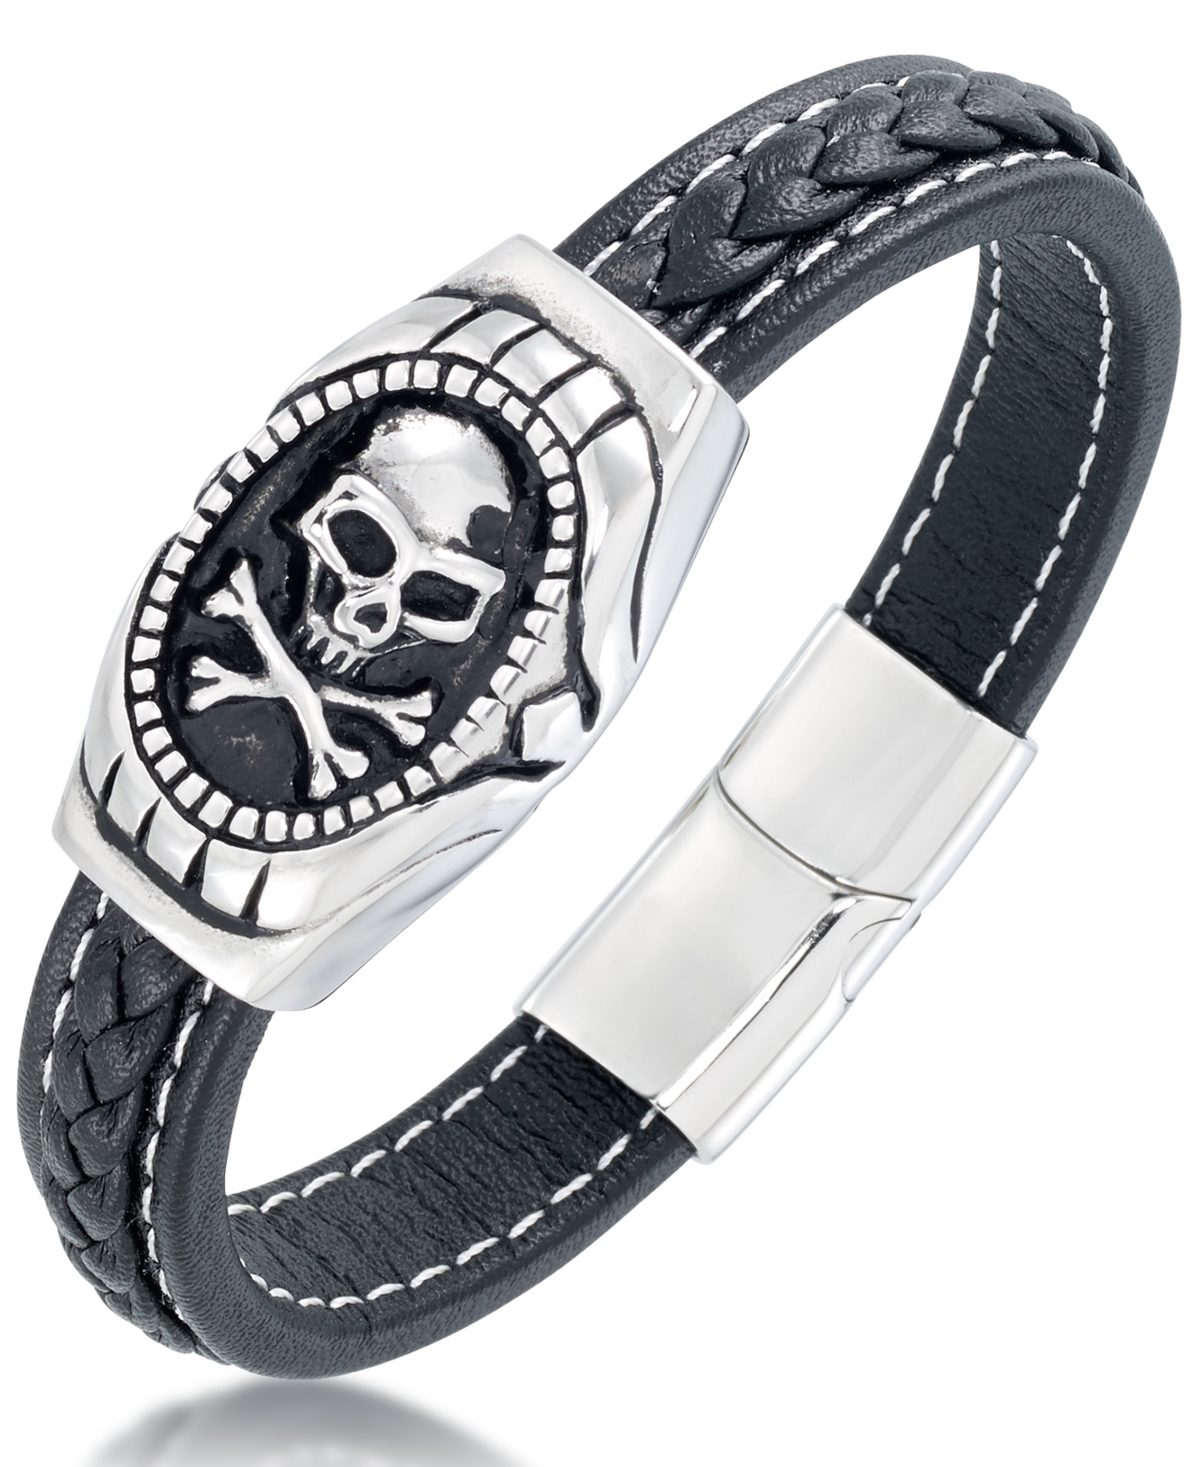 Men's Black Leather Skull Bracelet in Stainless Steel - Stainless Steel